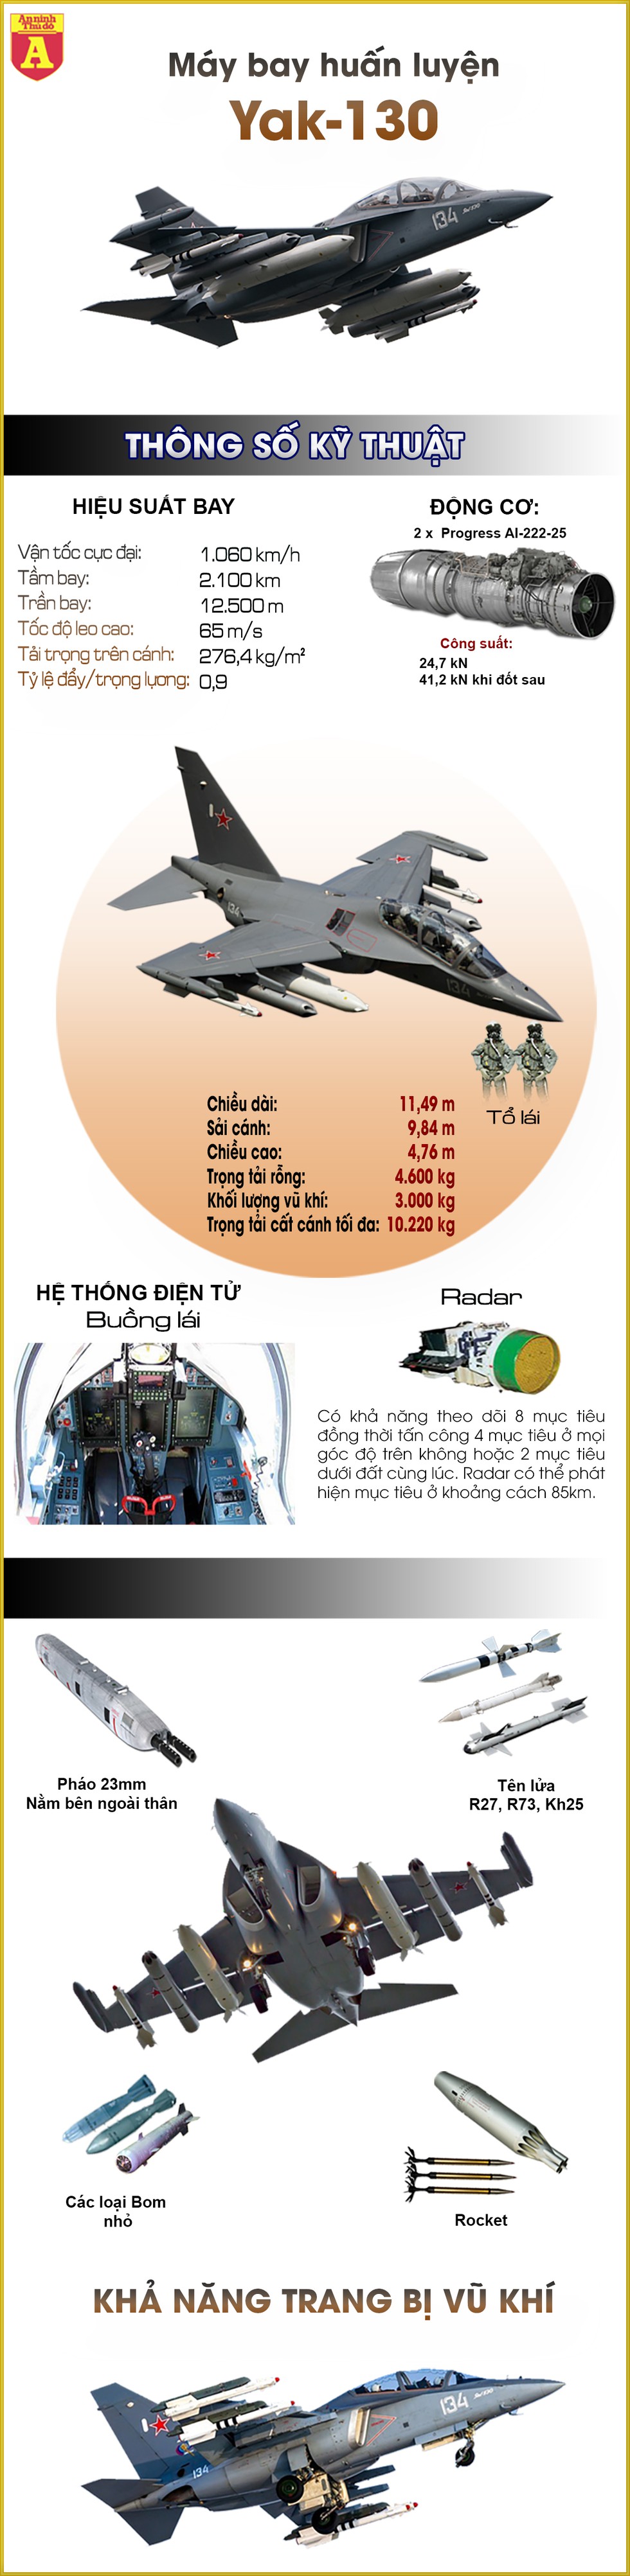 [Infographics] Có Yak-130, Việt Nam sở hữu dòng máy bay huấn luyện hàng đầu thế giới - Ảnh 1